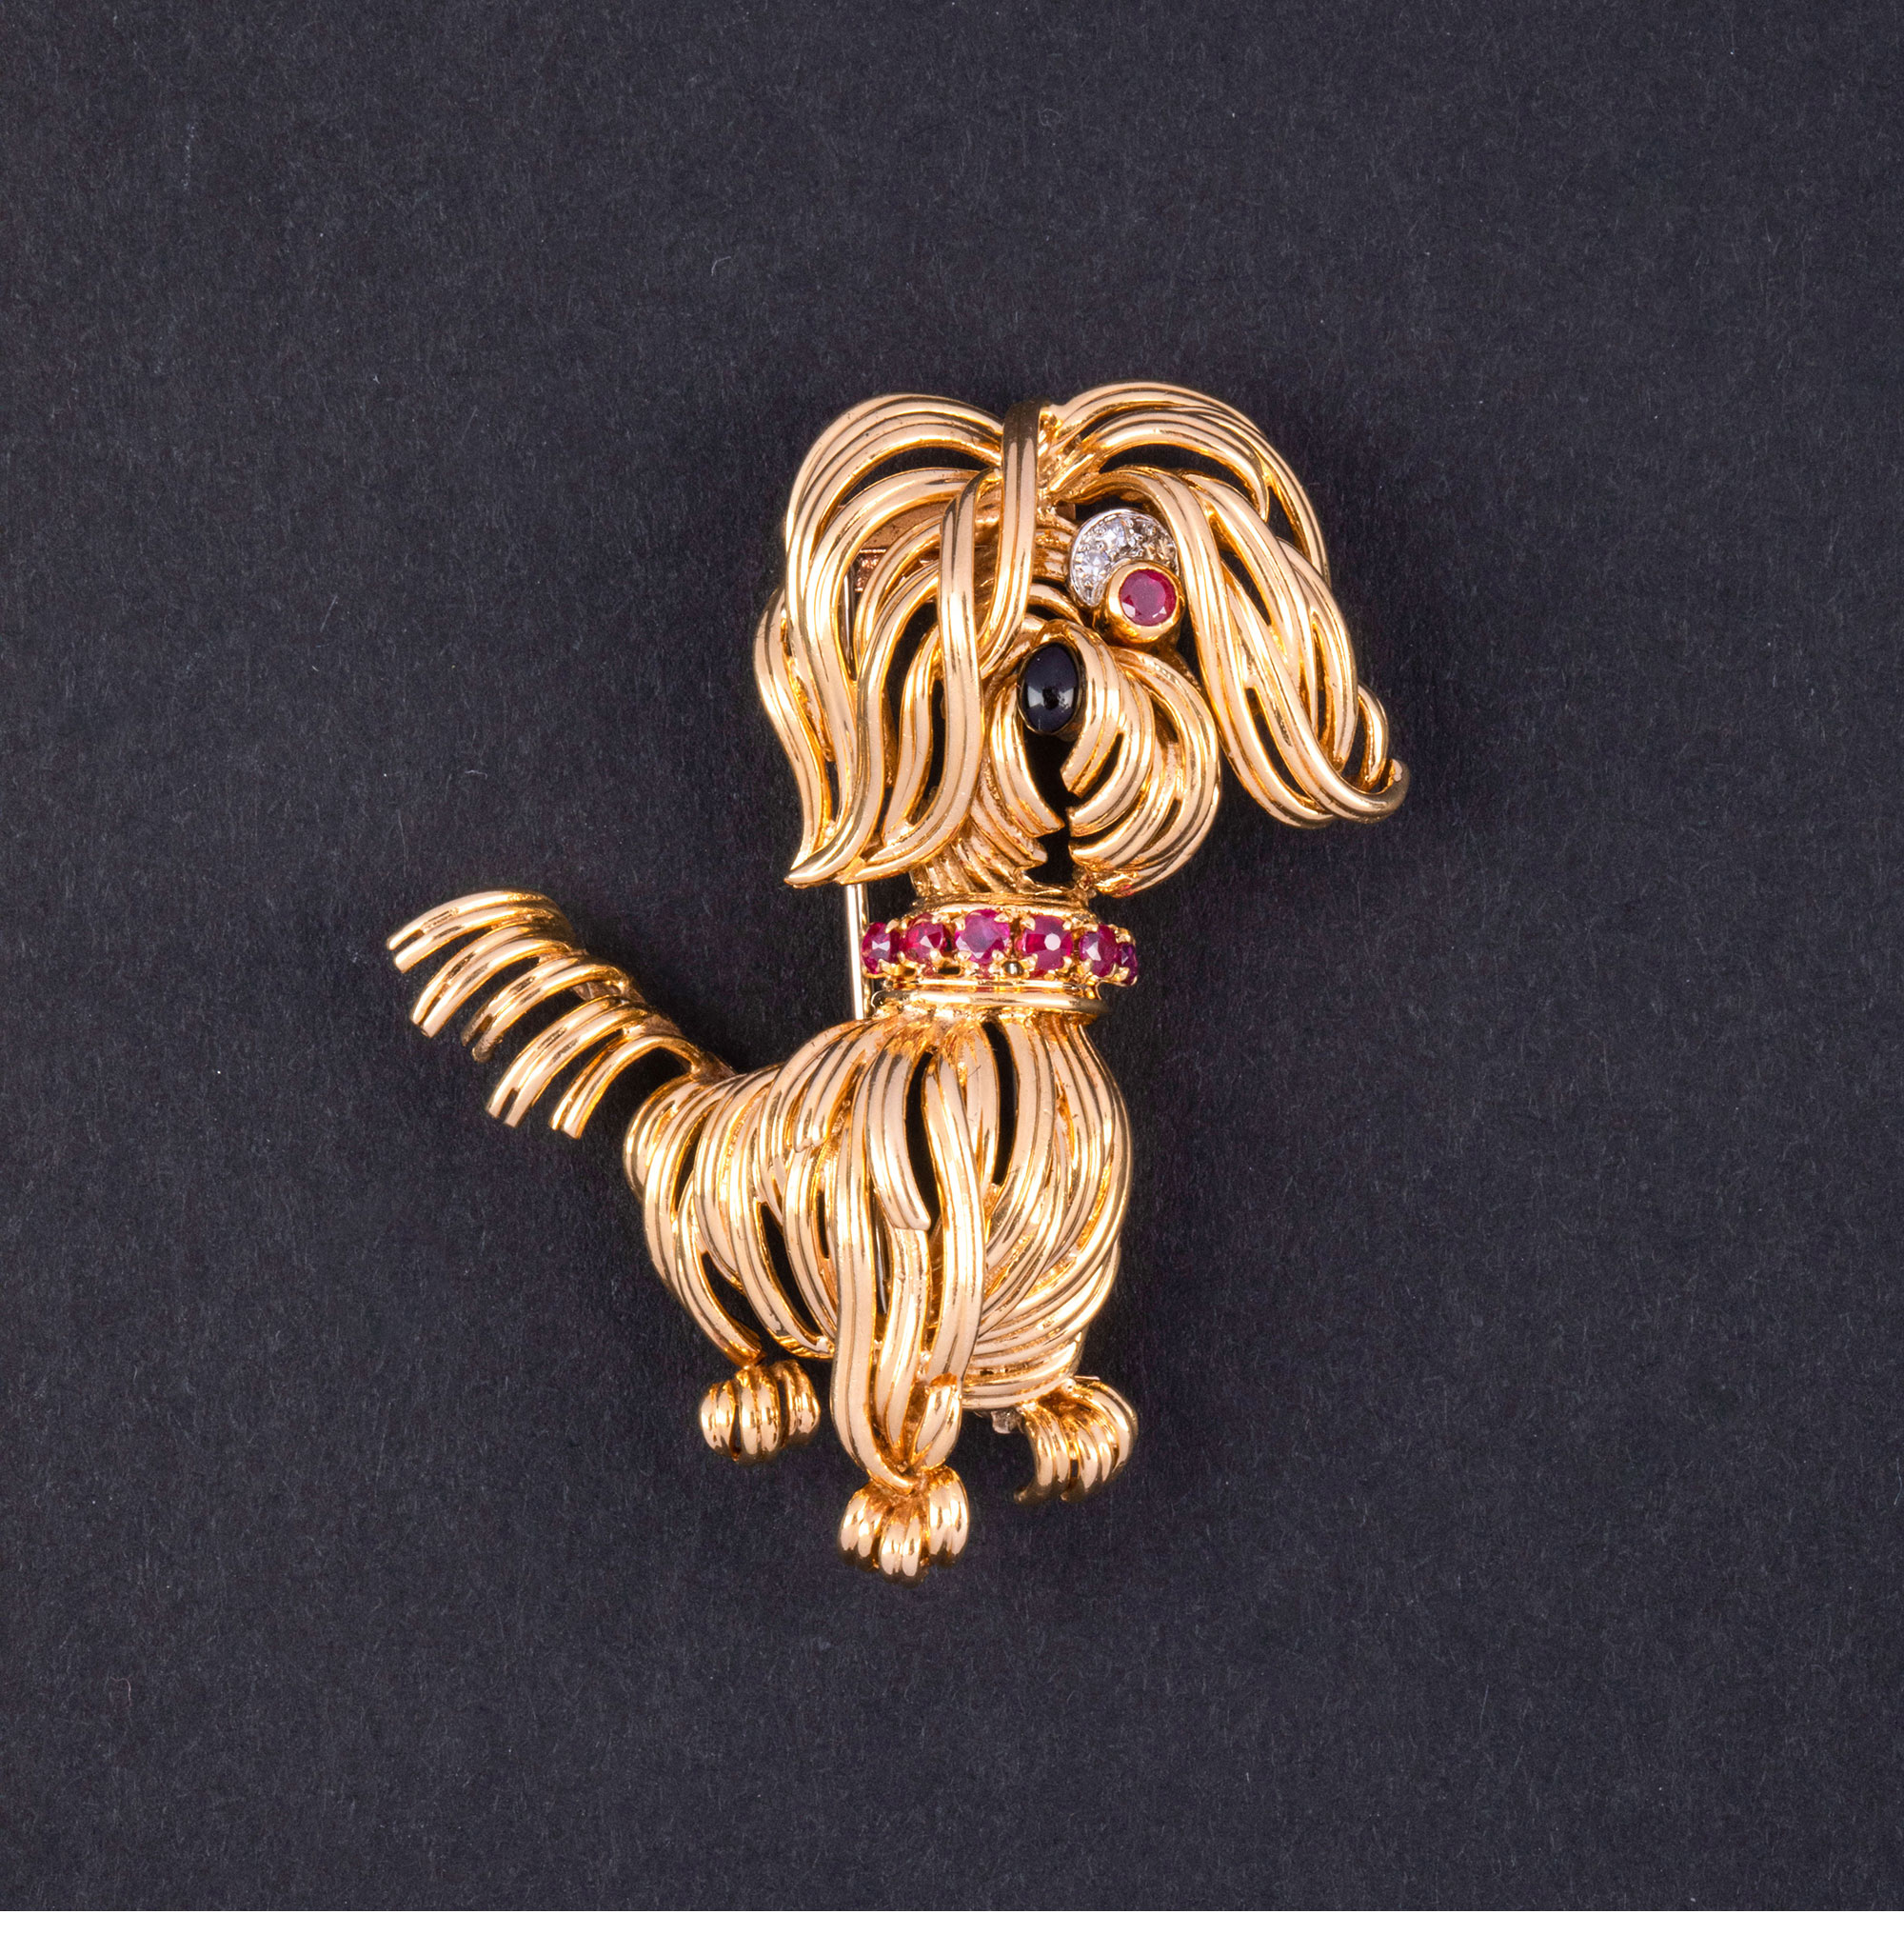 独角鹿西洋古董1960年代法国出品18K黄金镶嵌红宝石钻石珐琅精雕约克夏㹴犬造型胸针